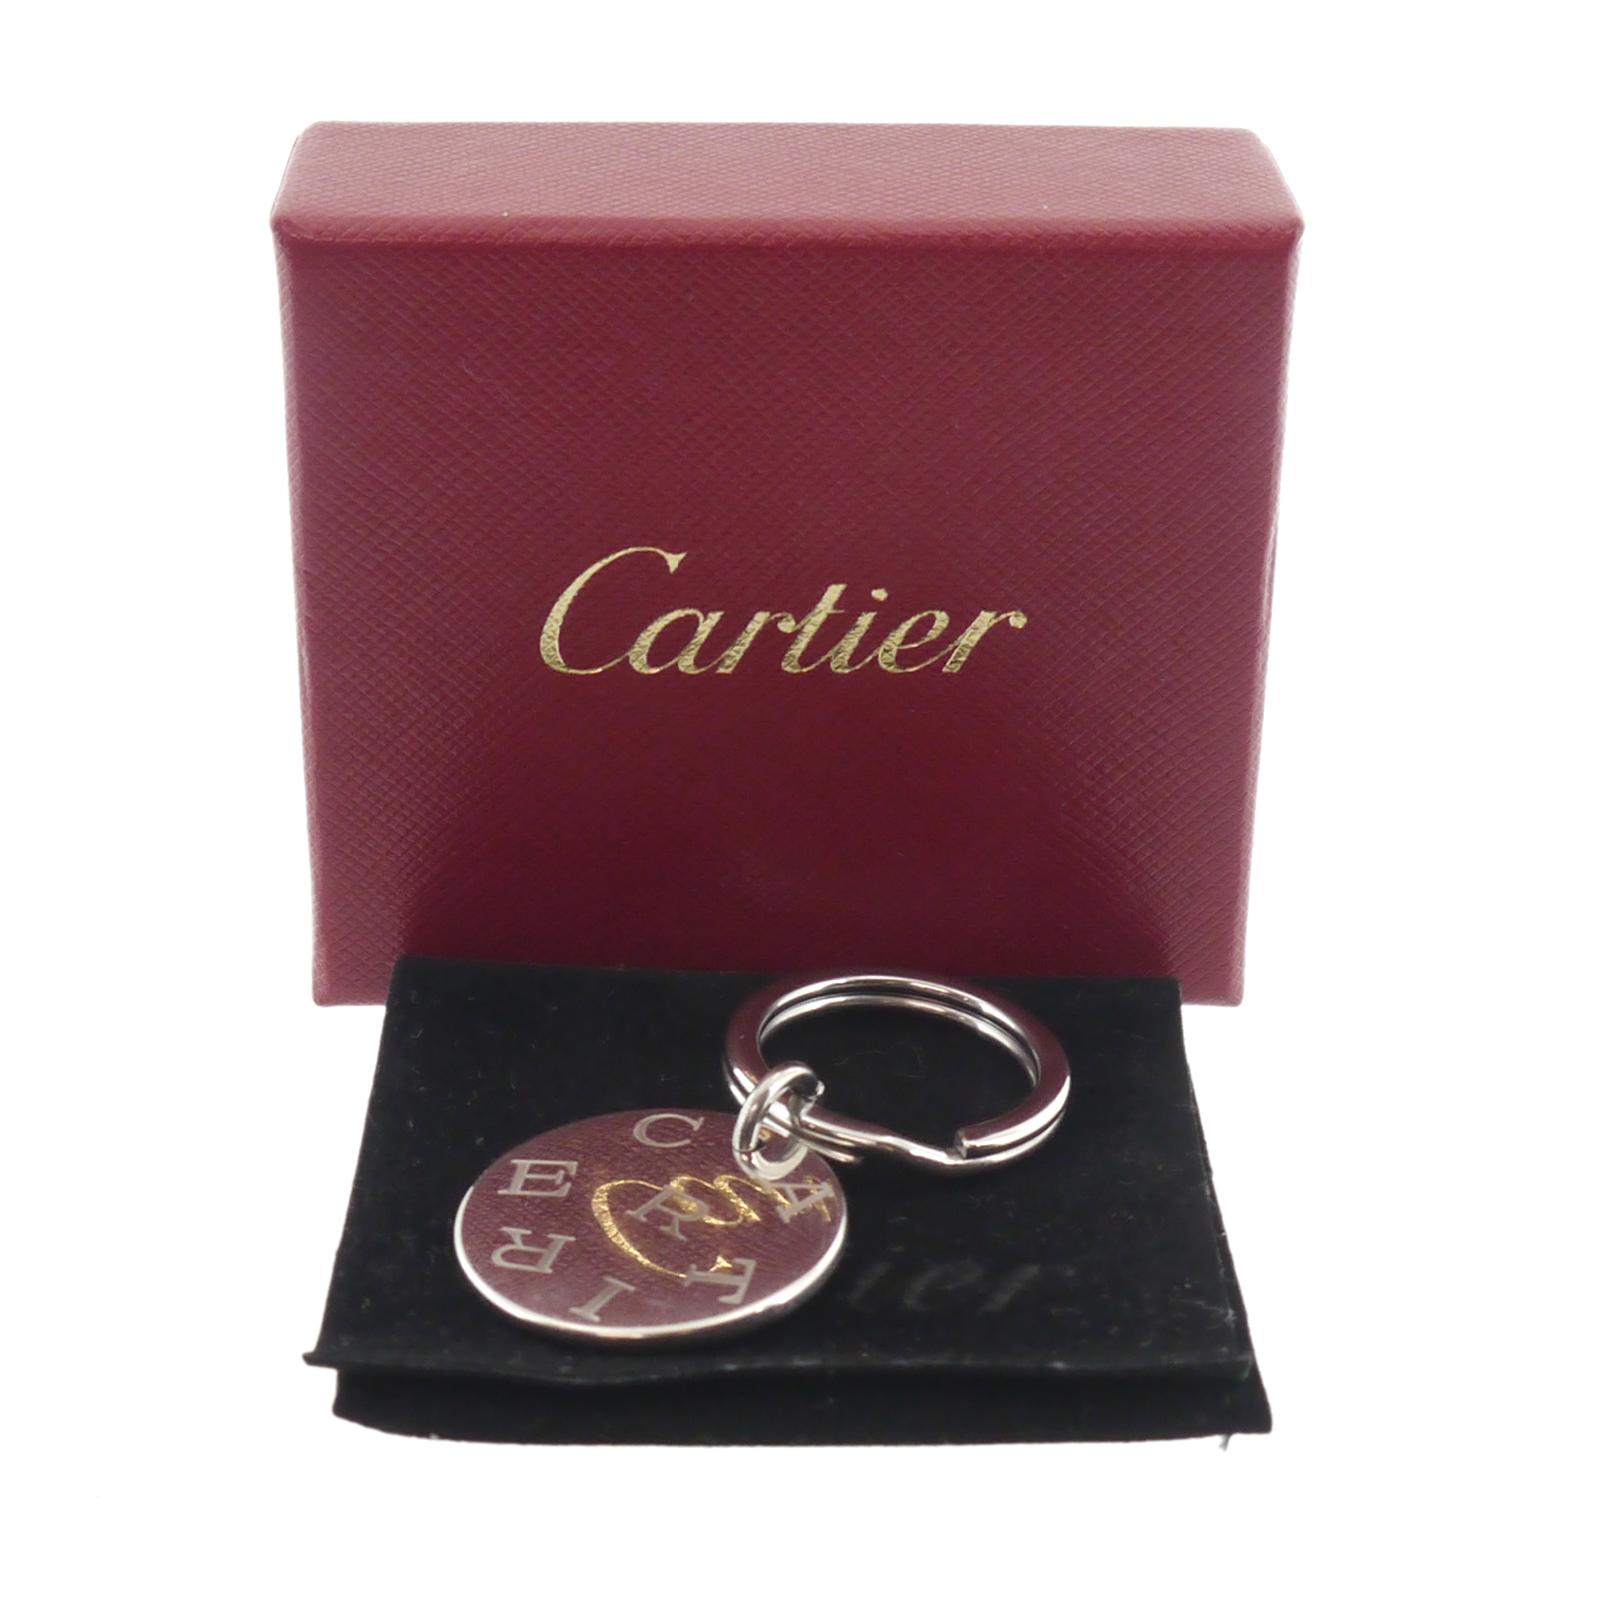 cartier ring holder